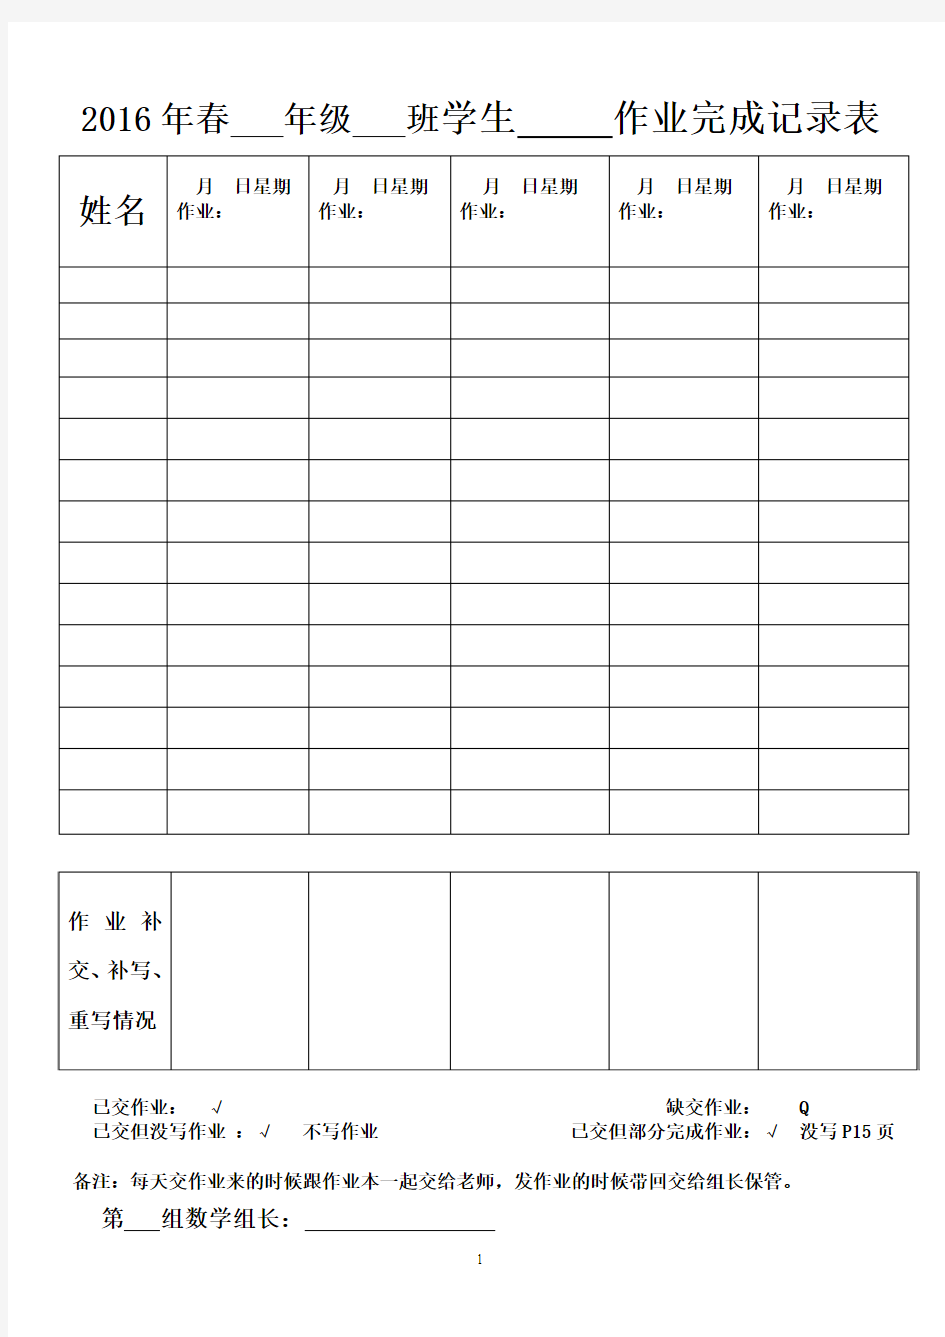 学生作业上交完成情况登记表(小组长专用)